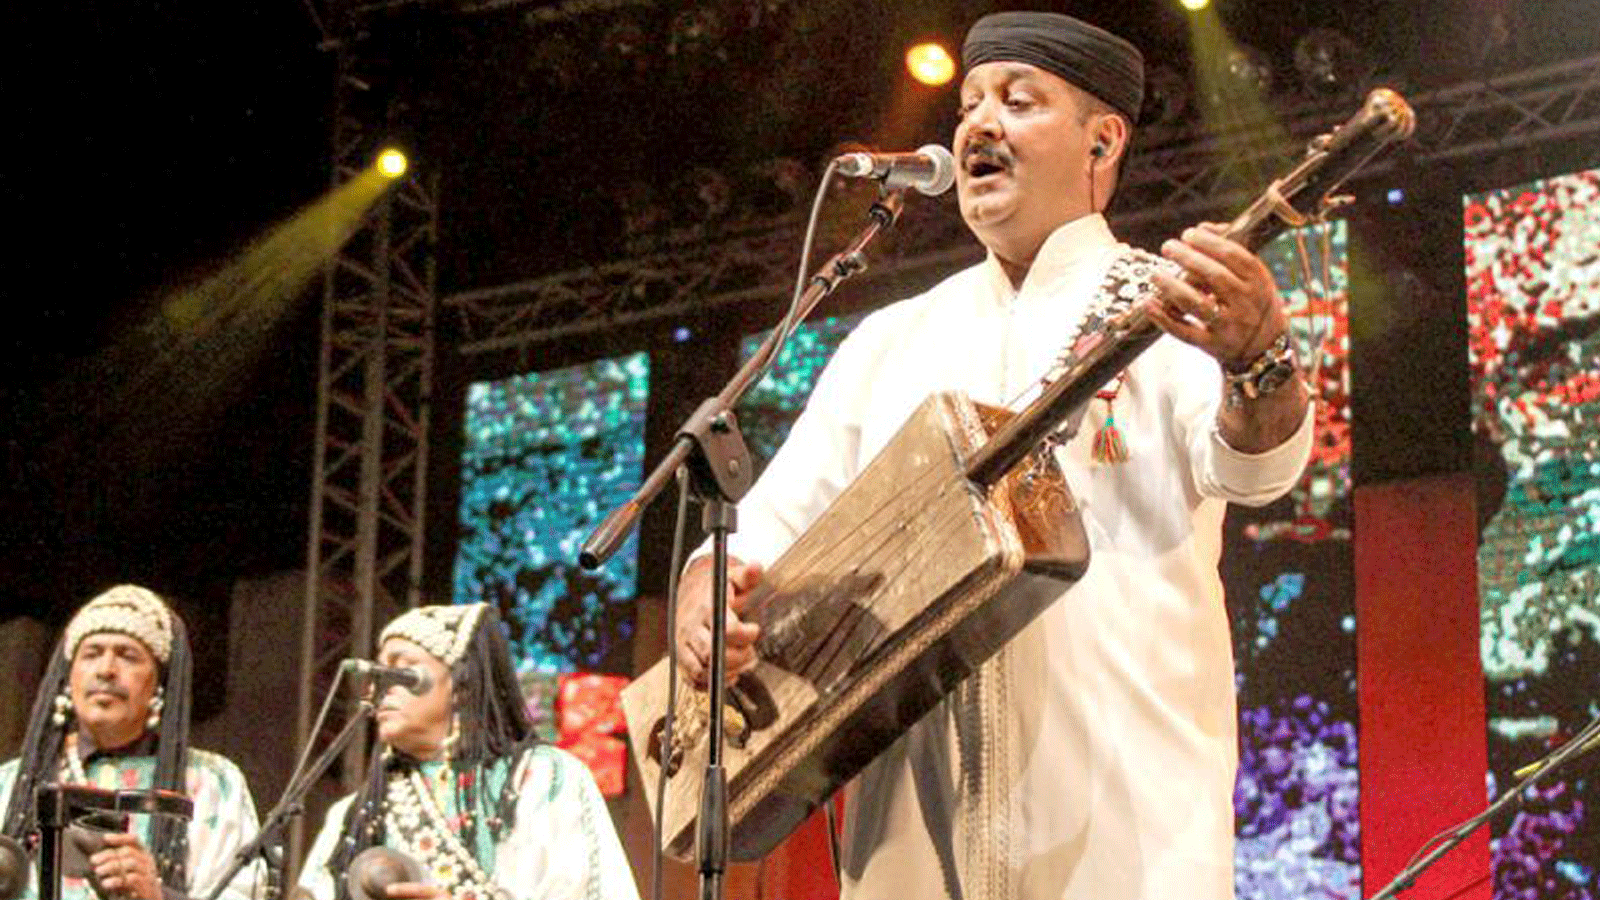 الموسيقار المغربي حميد القصري يقدم عرضاً خلال مهرجان كناوة 2019 في منطقة الصويرة الغربية المغربية. 22 حزيران/ يونيو2019